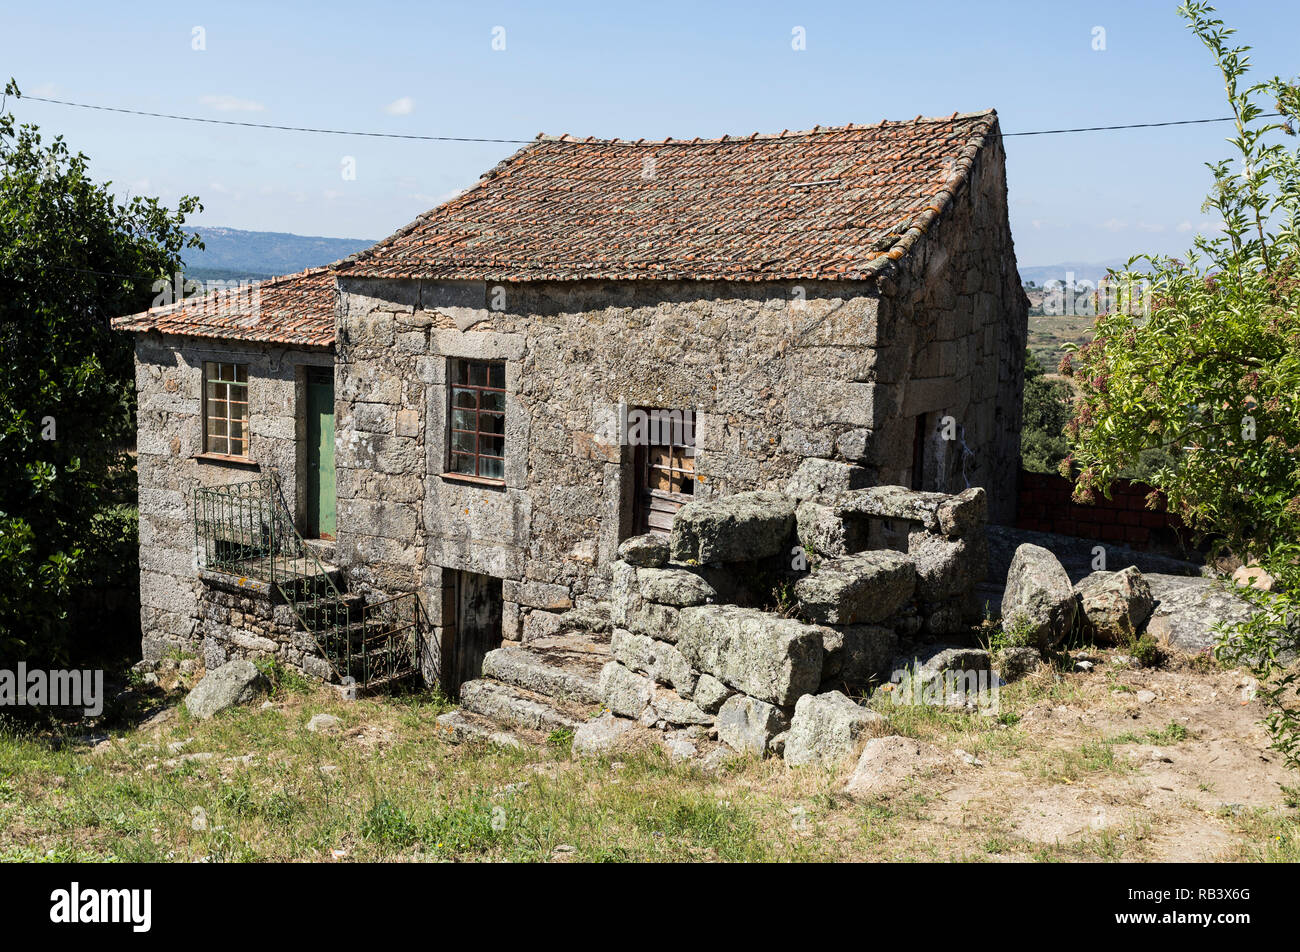 Casa de Granito locales tradicionales de la arquitectura rural de la región de Beira Alta, en Portugal Foto de stock